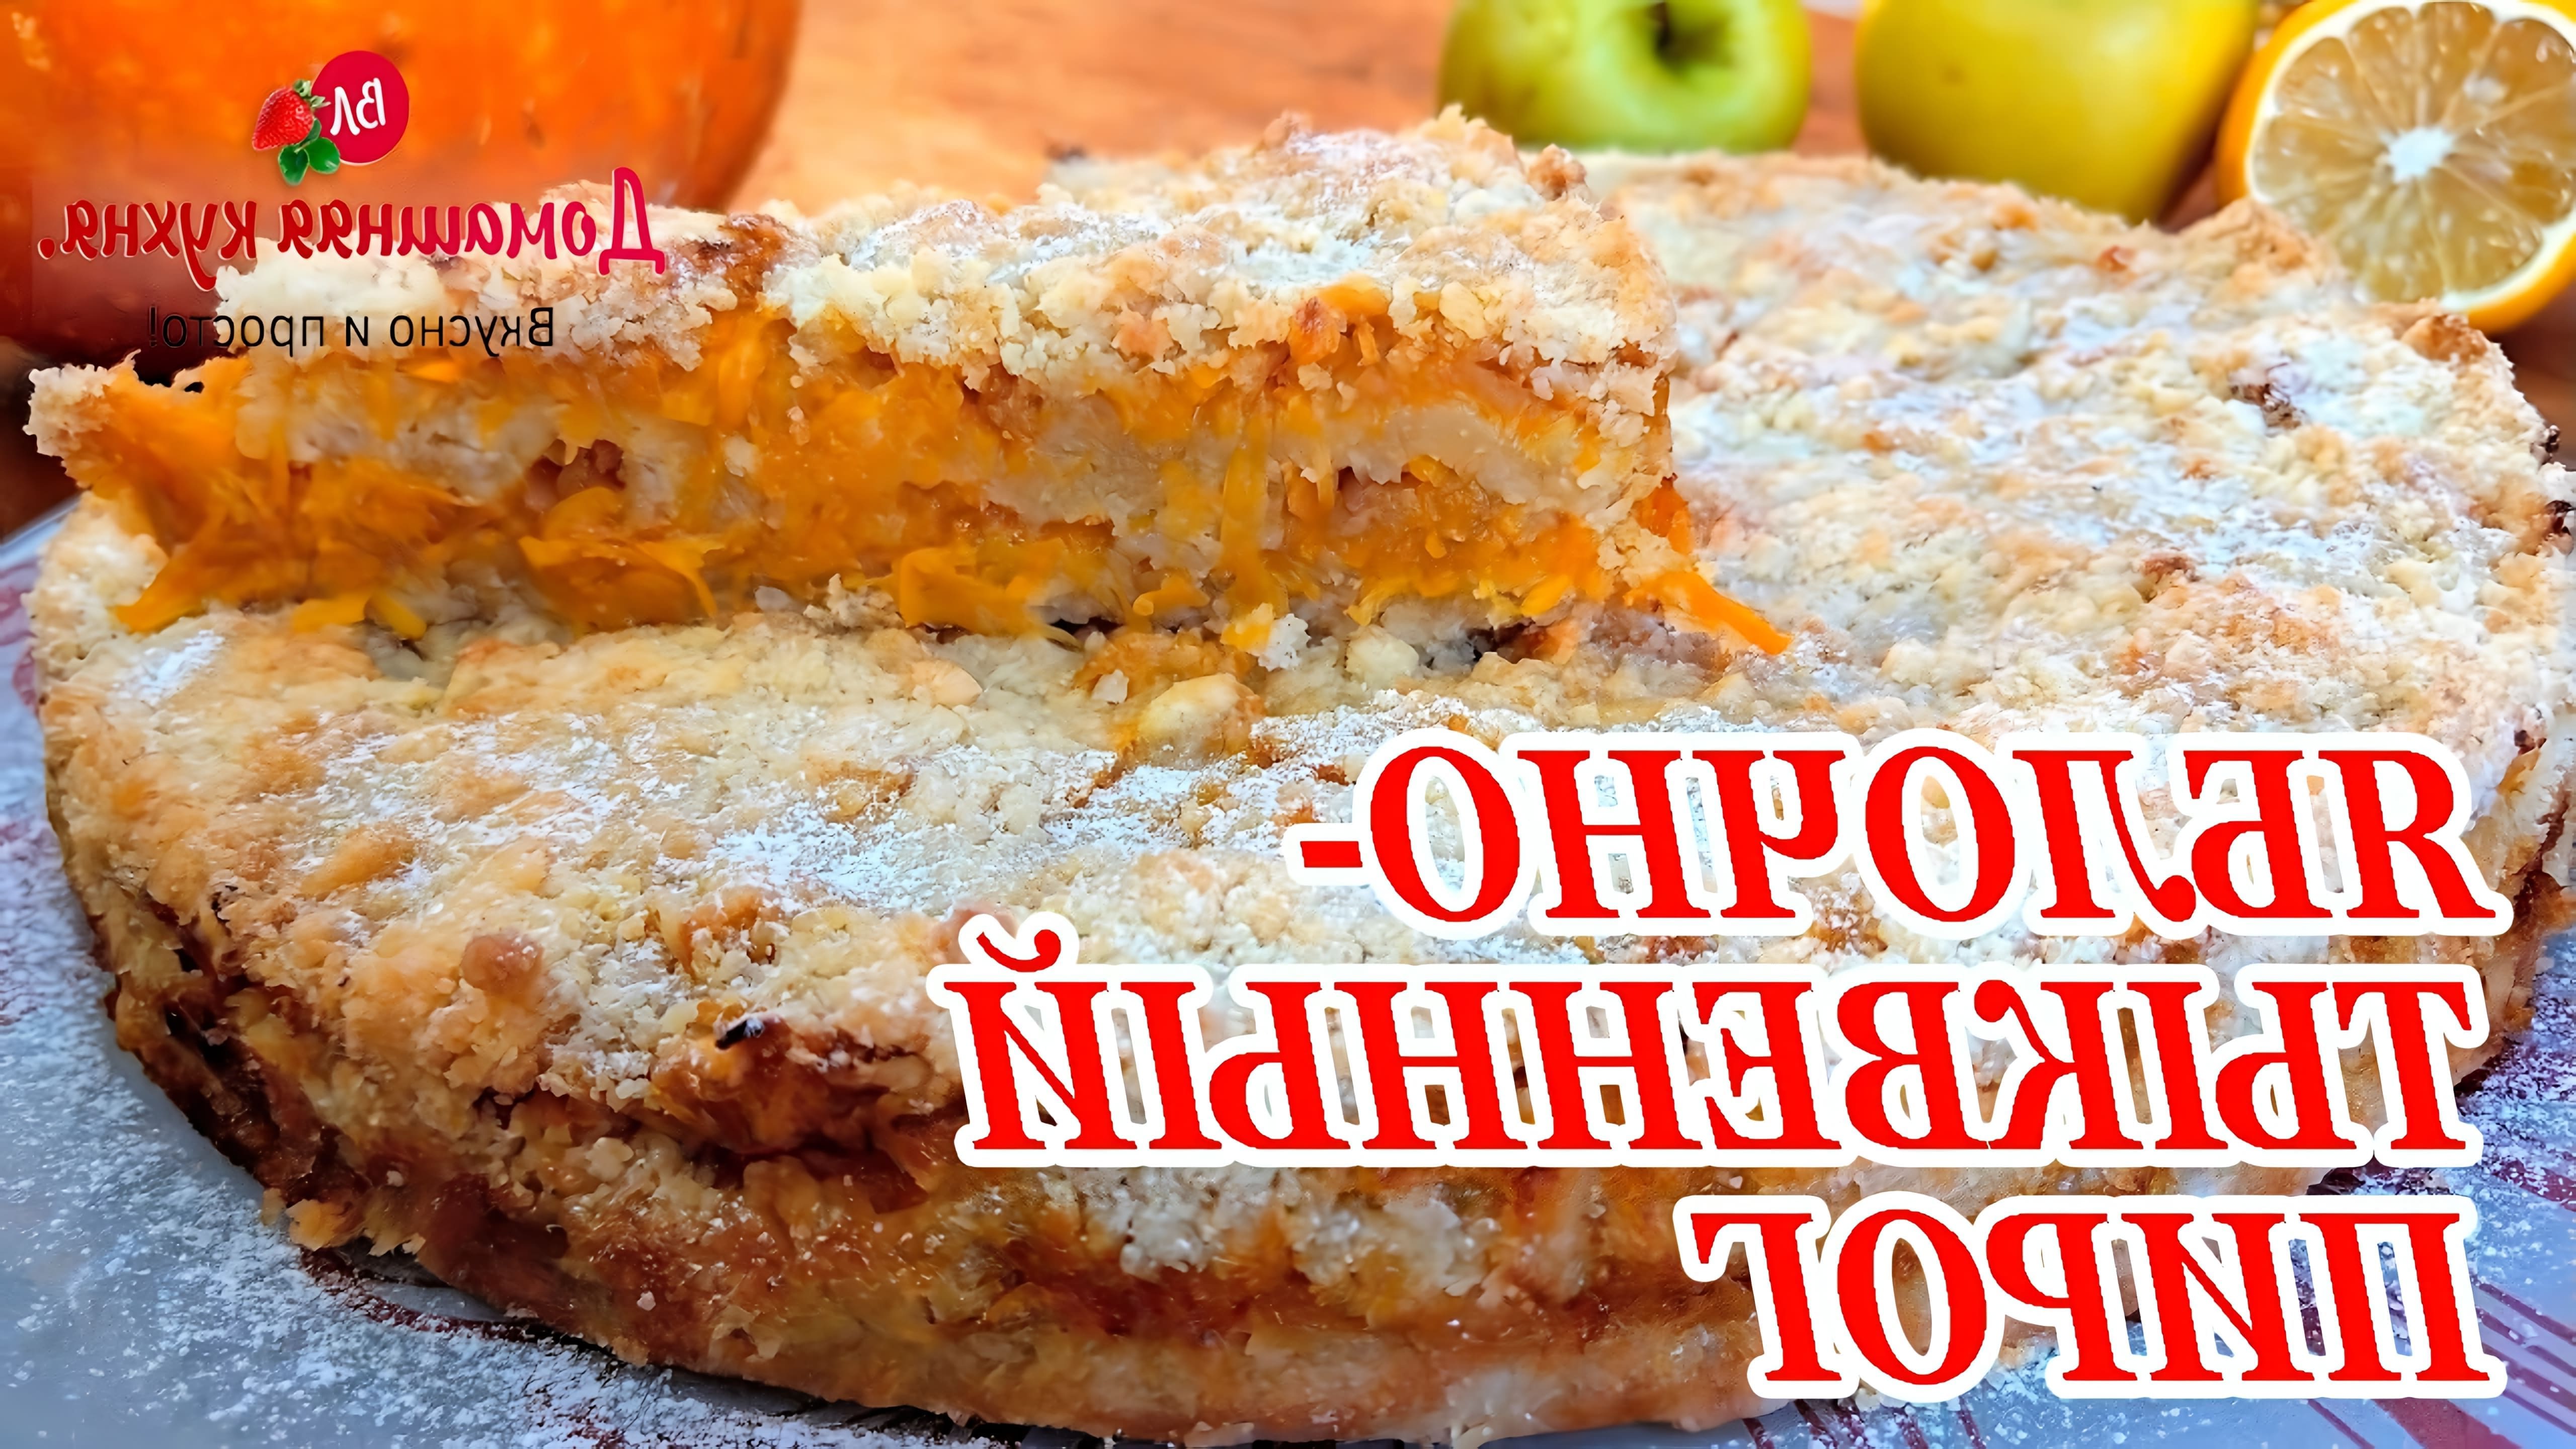 В этом видео демонстрируется рецепт приготовления тыквенно-яблочного пирога